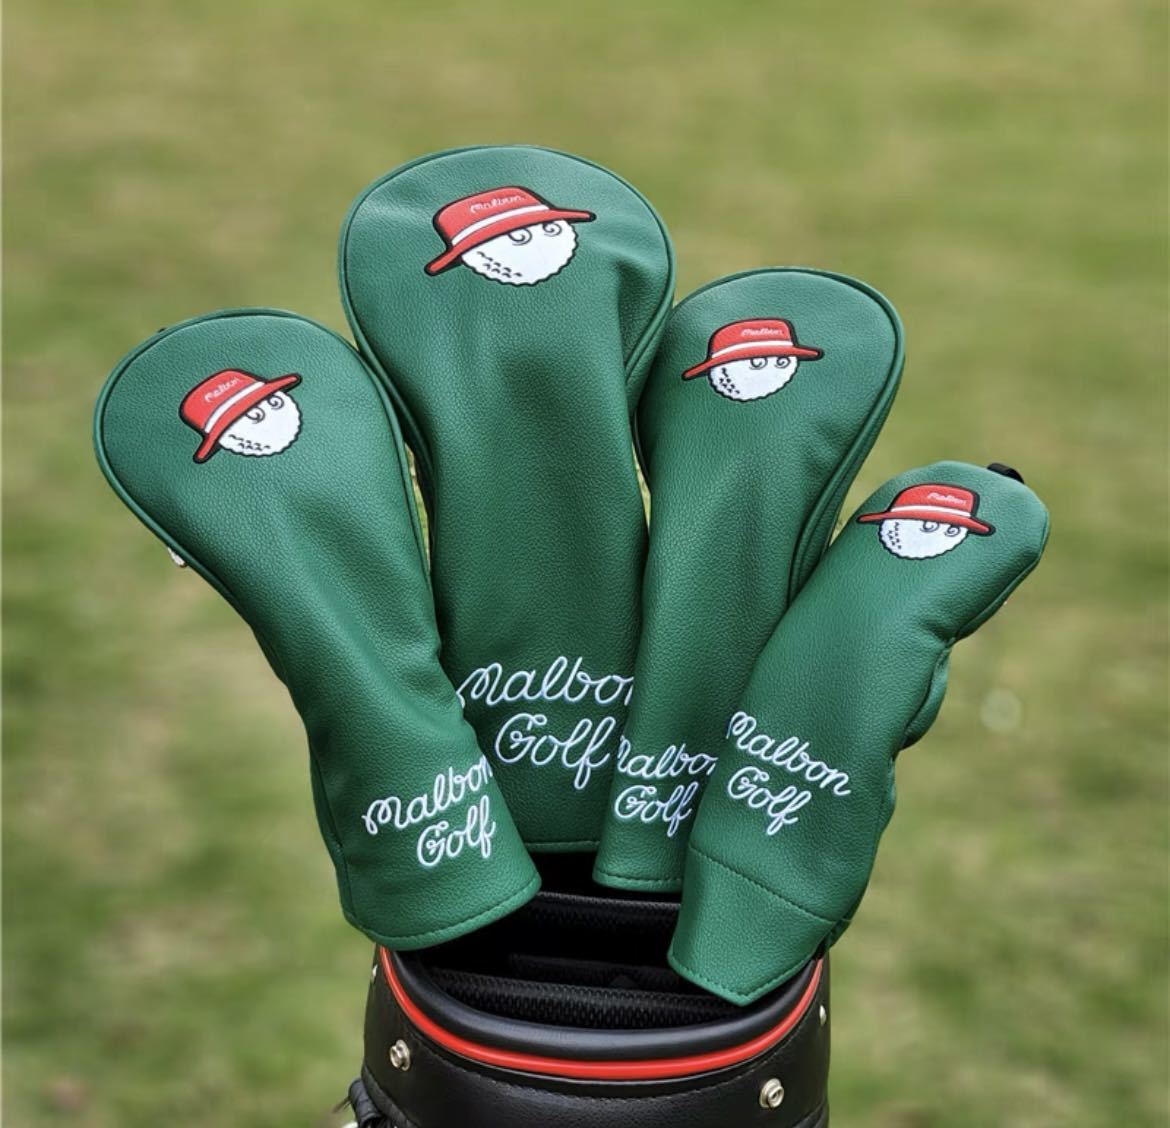 新品 4個セット Malbon Golf マルボン ゴルフ ヘッドカバー グリーン